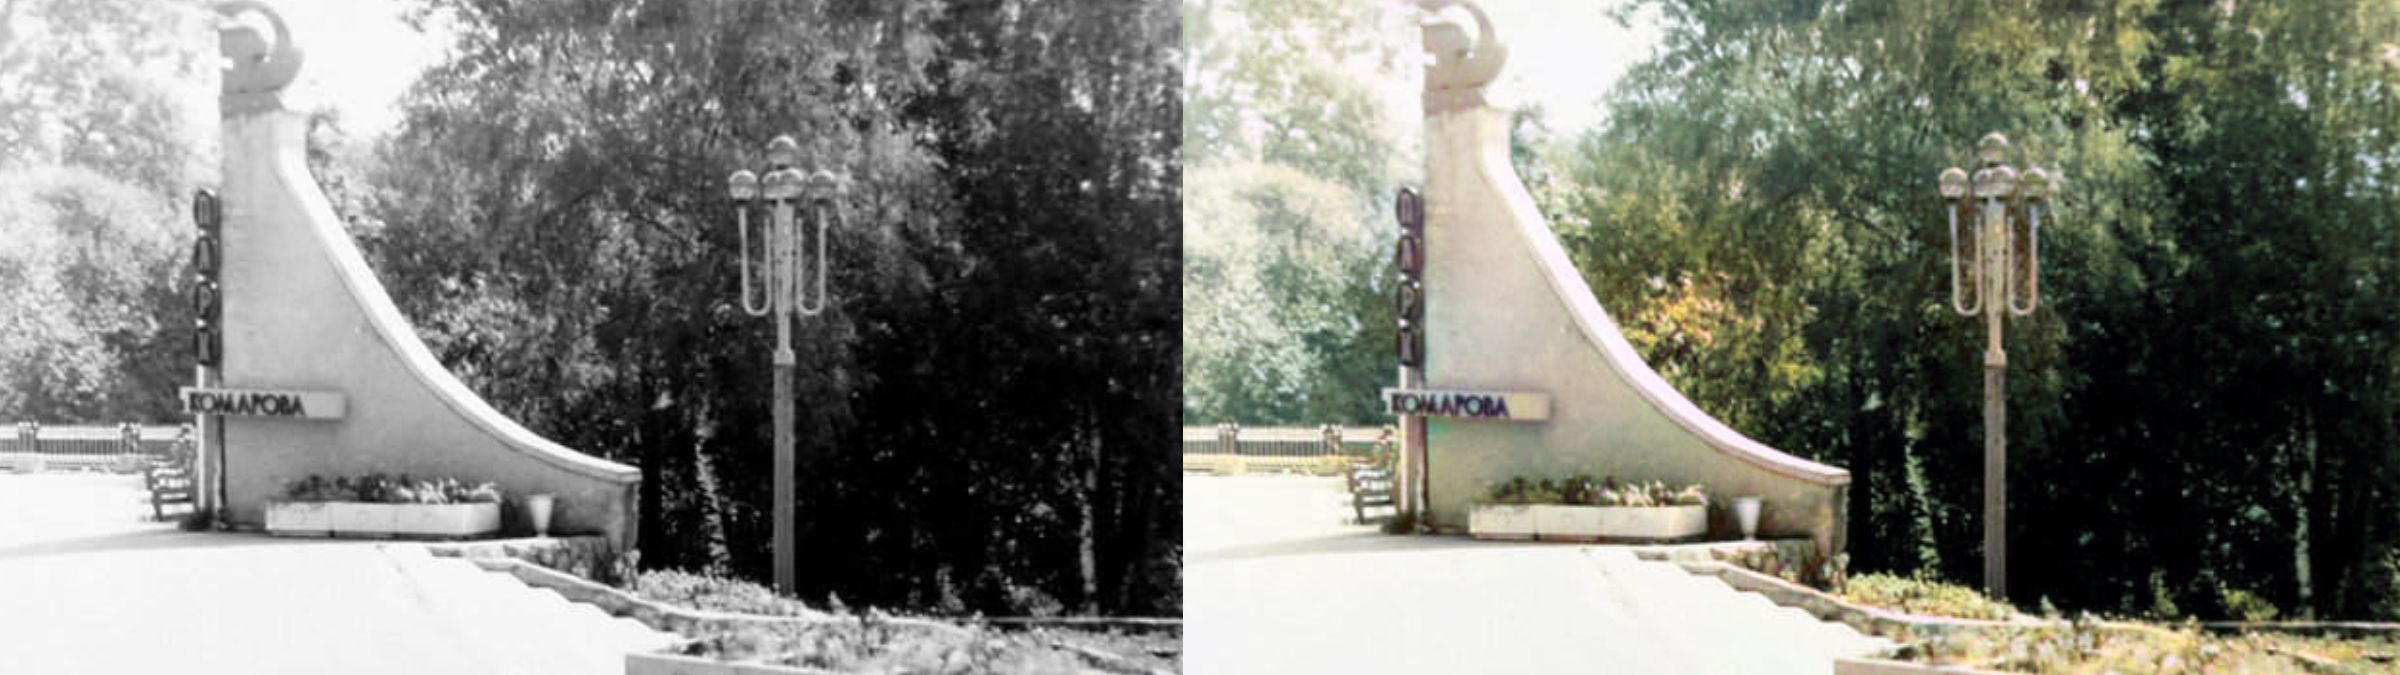 Історія Калуша в кольорі: чорно-білі знімки міста у яскравому забарвленні | №3